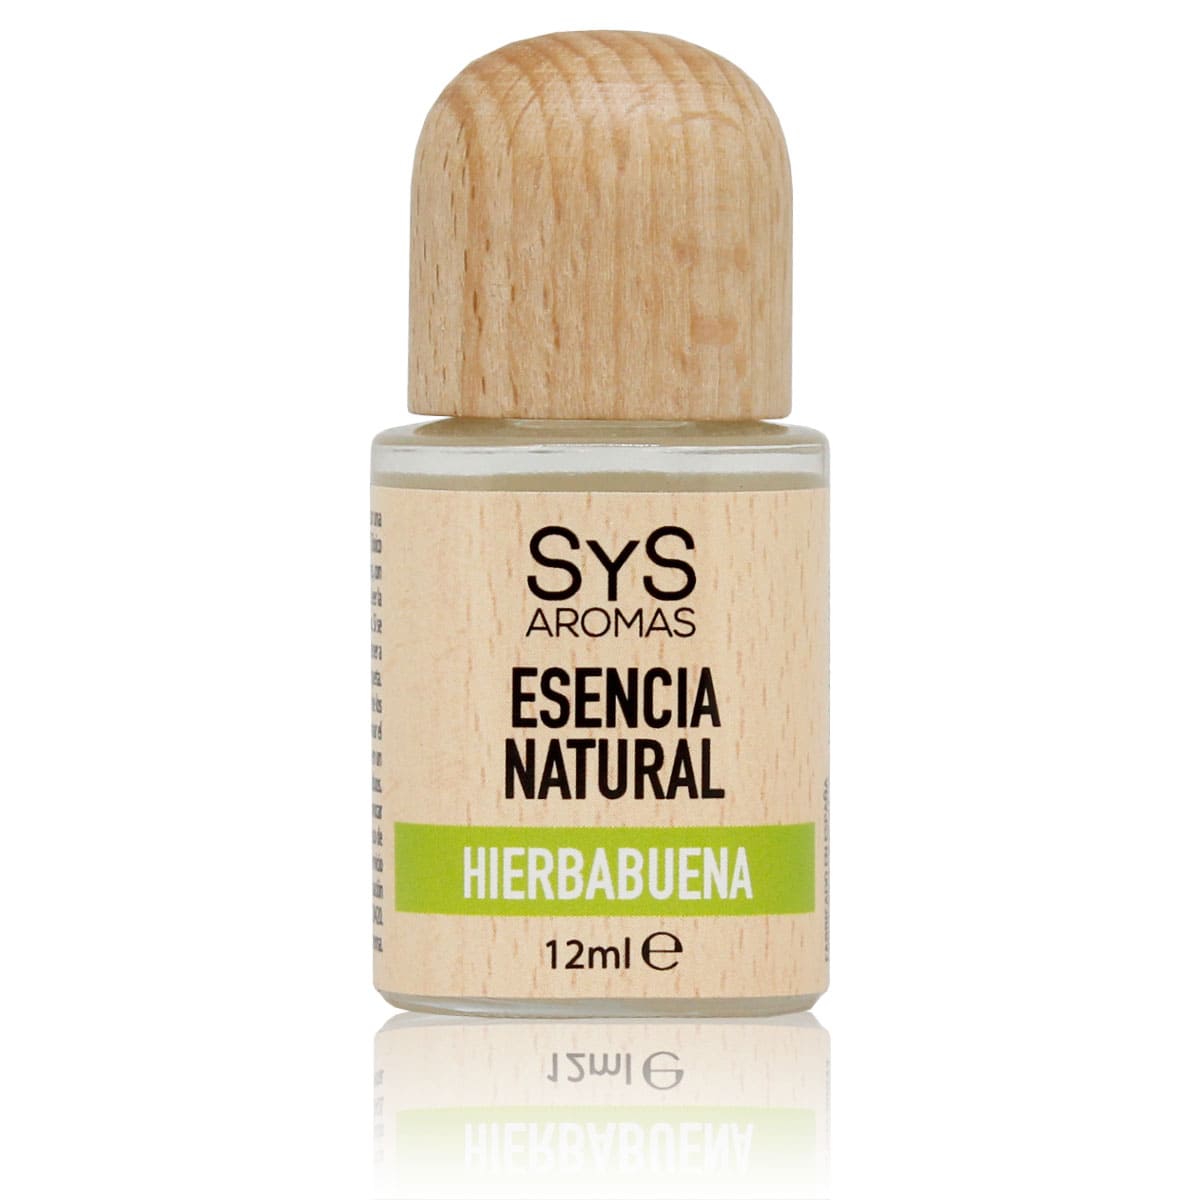 Comprar Esencia Hierbabuena 12ml SYS Aromas